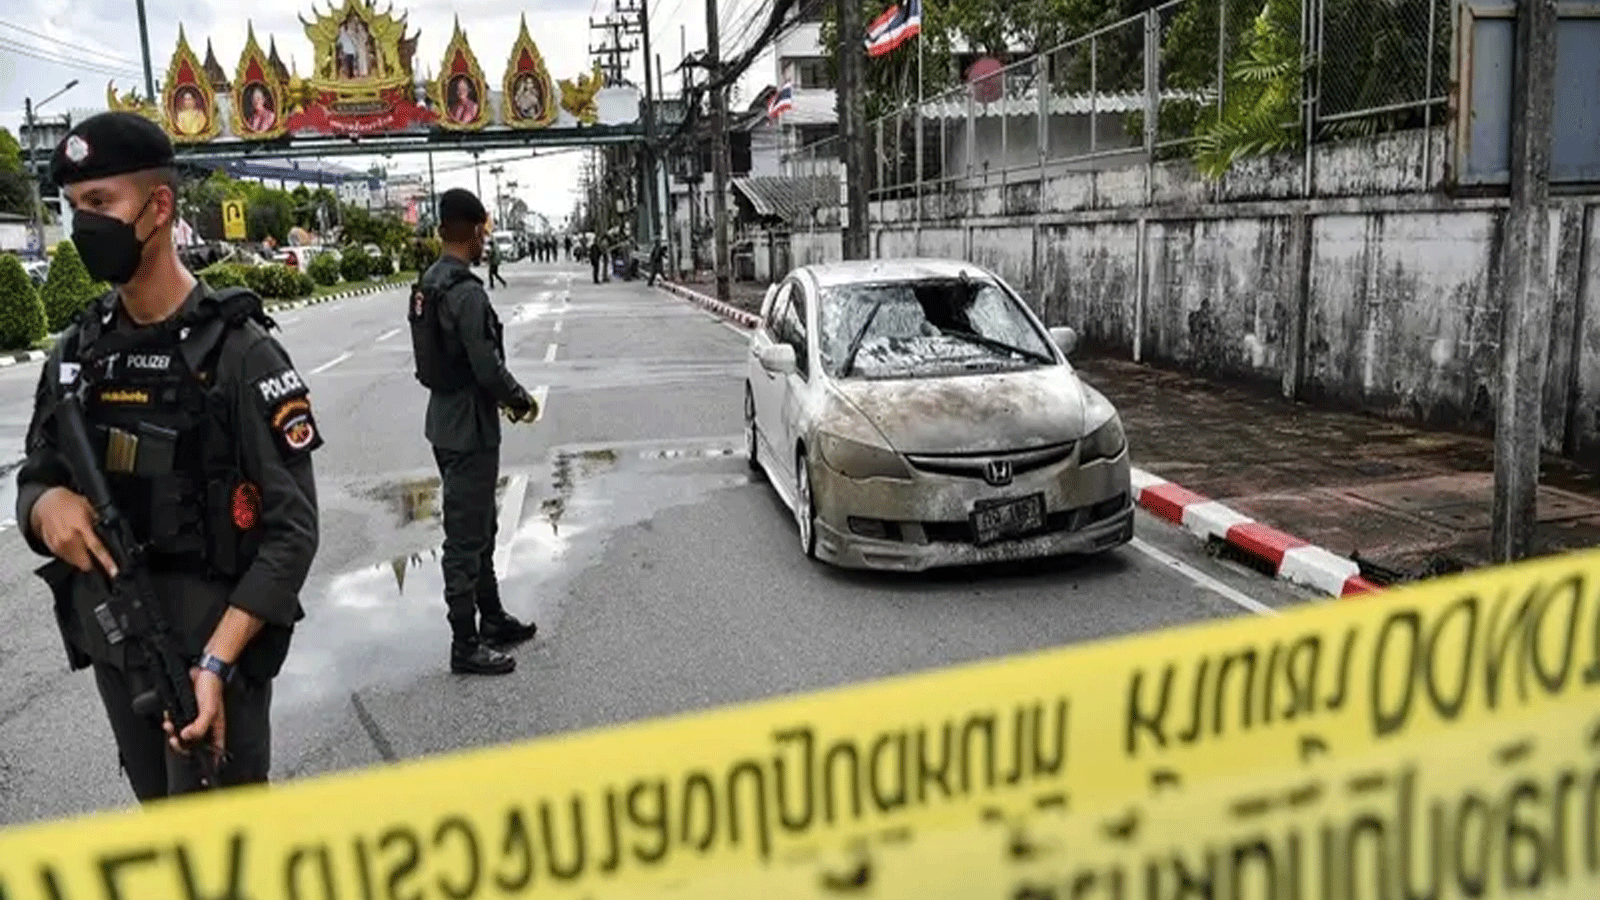 مسؤولو الشرطة بالقرب من سيارة متضررة جزئيًا، بعد انفجار سيارة مفخخة في حادث منفصل خارج مقر الشرطة في منطقة موانغ في مقاطعة ناراثيوات الجنوبية المضطربة في تايلاند